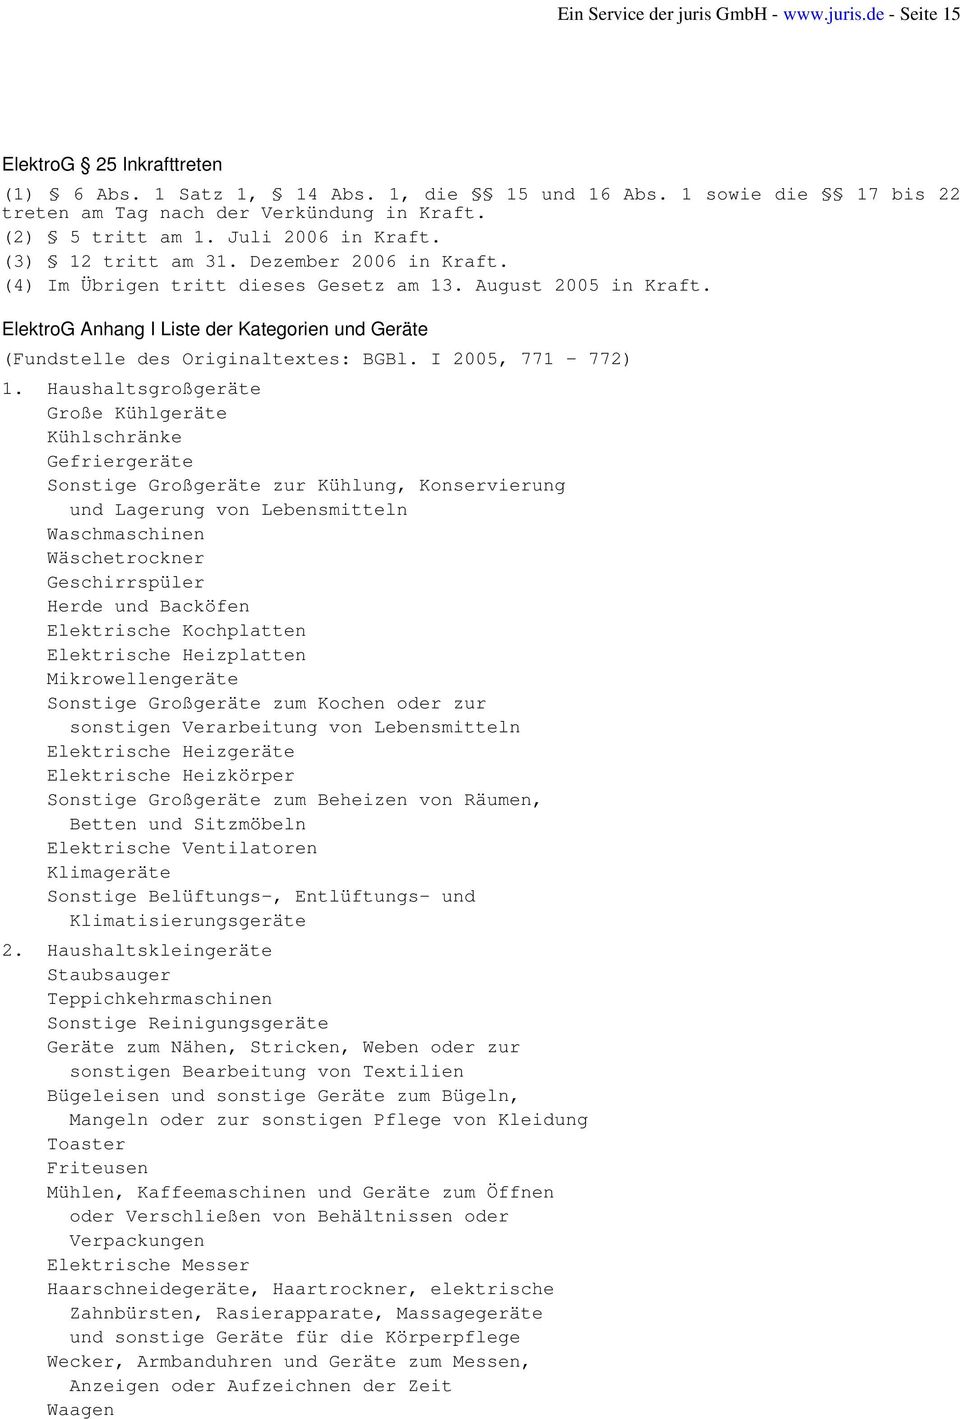 ElektroG Anhang I Liste der Kategorien und Geräte (Fundstelle des Originaltextes: BGBl. I 2005, 771-772) 1.